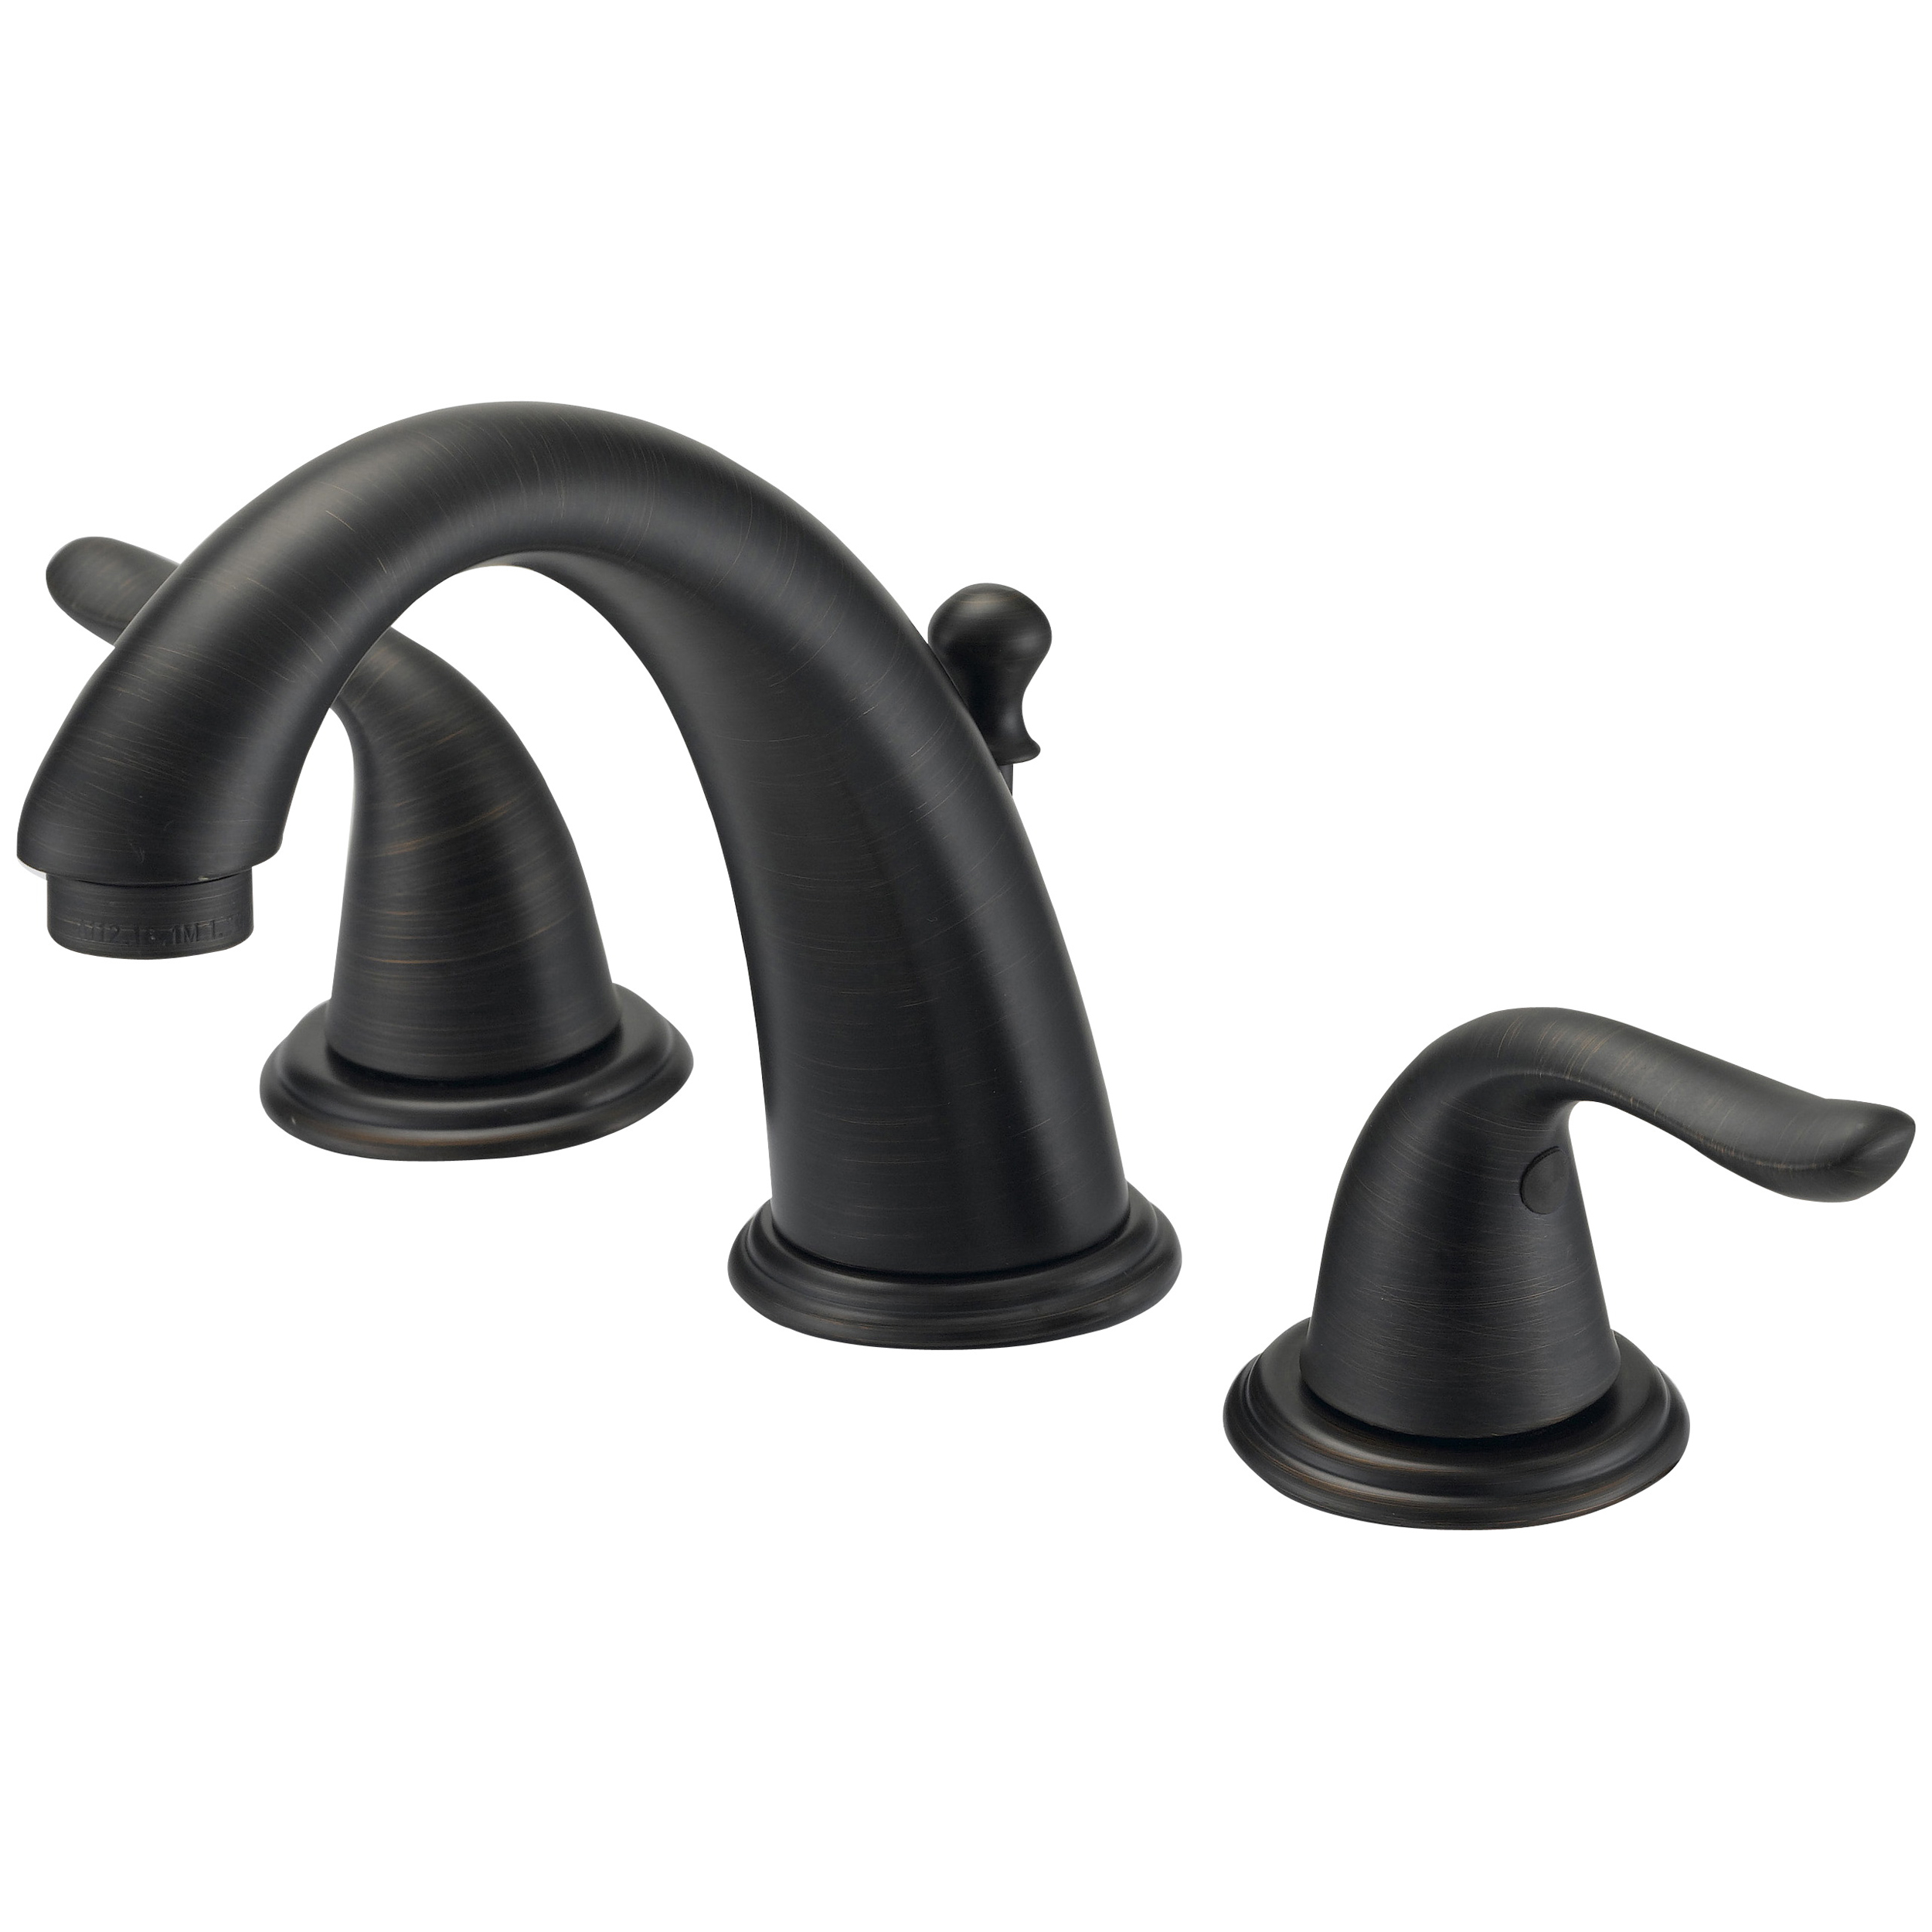 TQ-FW6B0000RW Lavatory Faucet, 1.2 gpm, 2-Faucet Handle, 3-Faucet Hole, Brass/Plastic/Zinc, Lever Handle